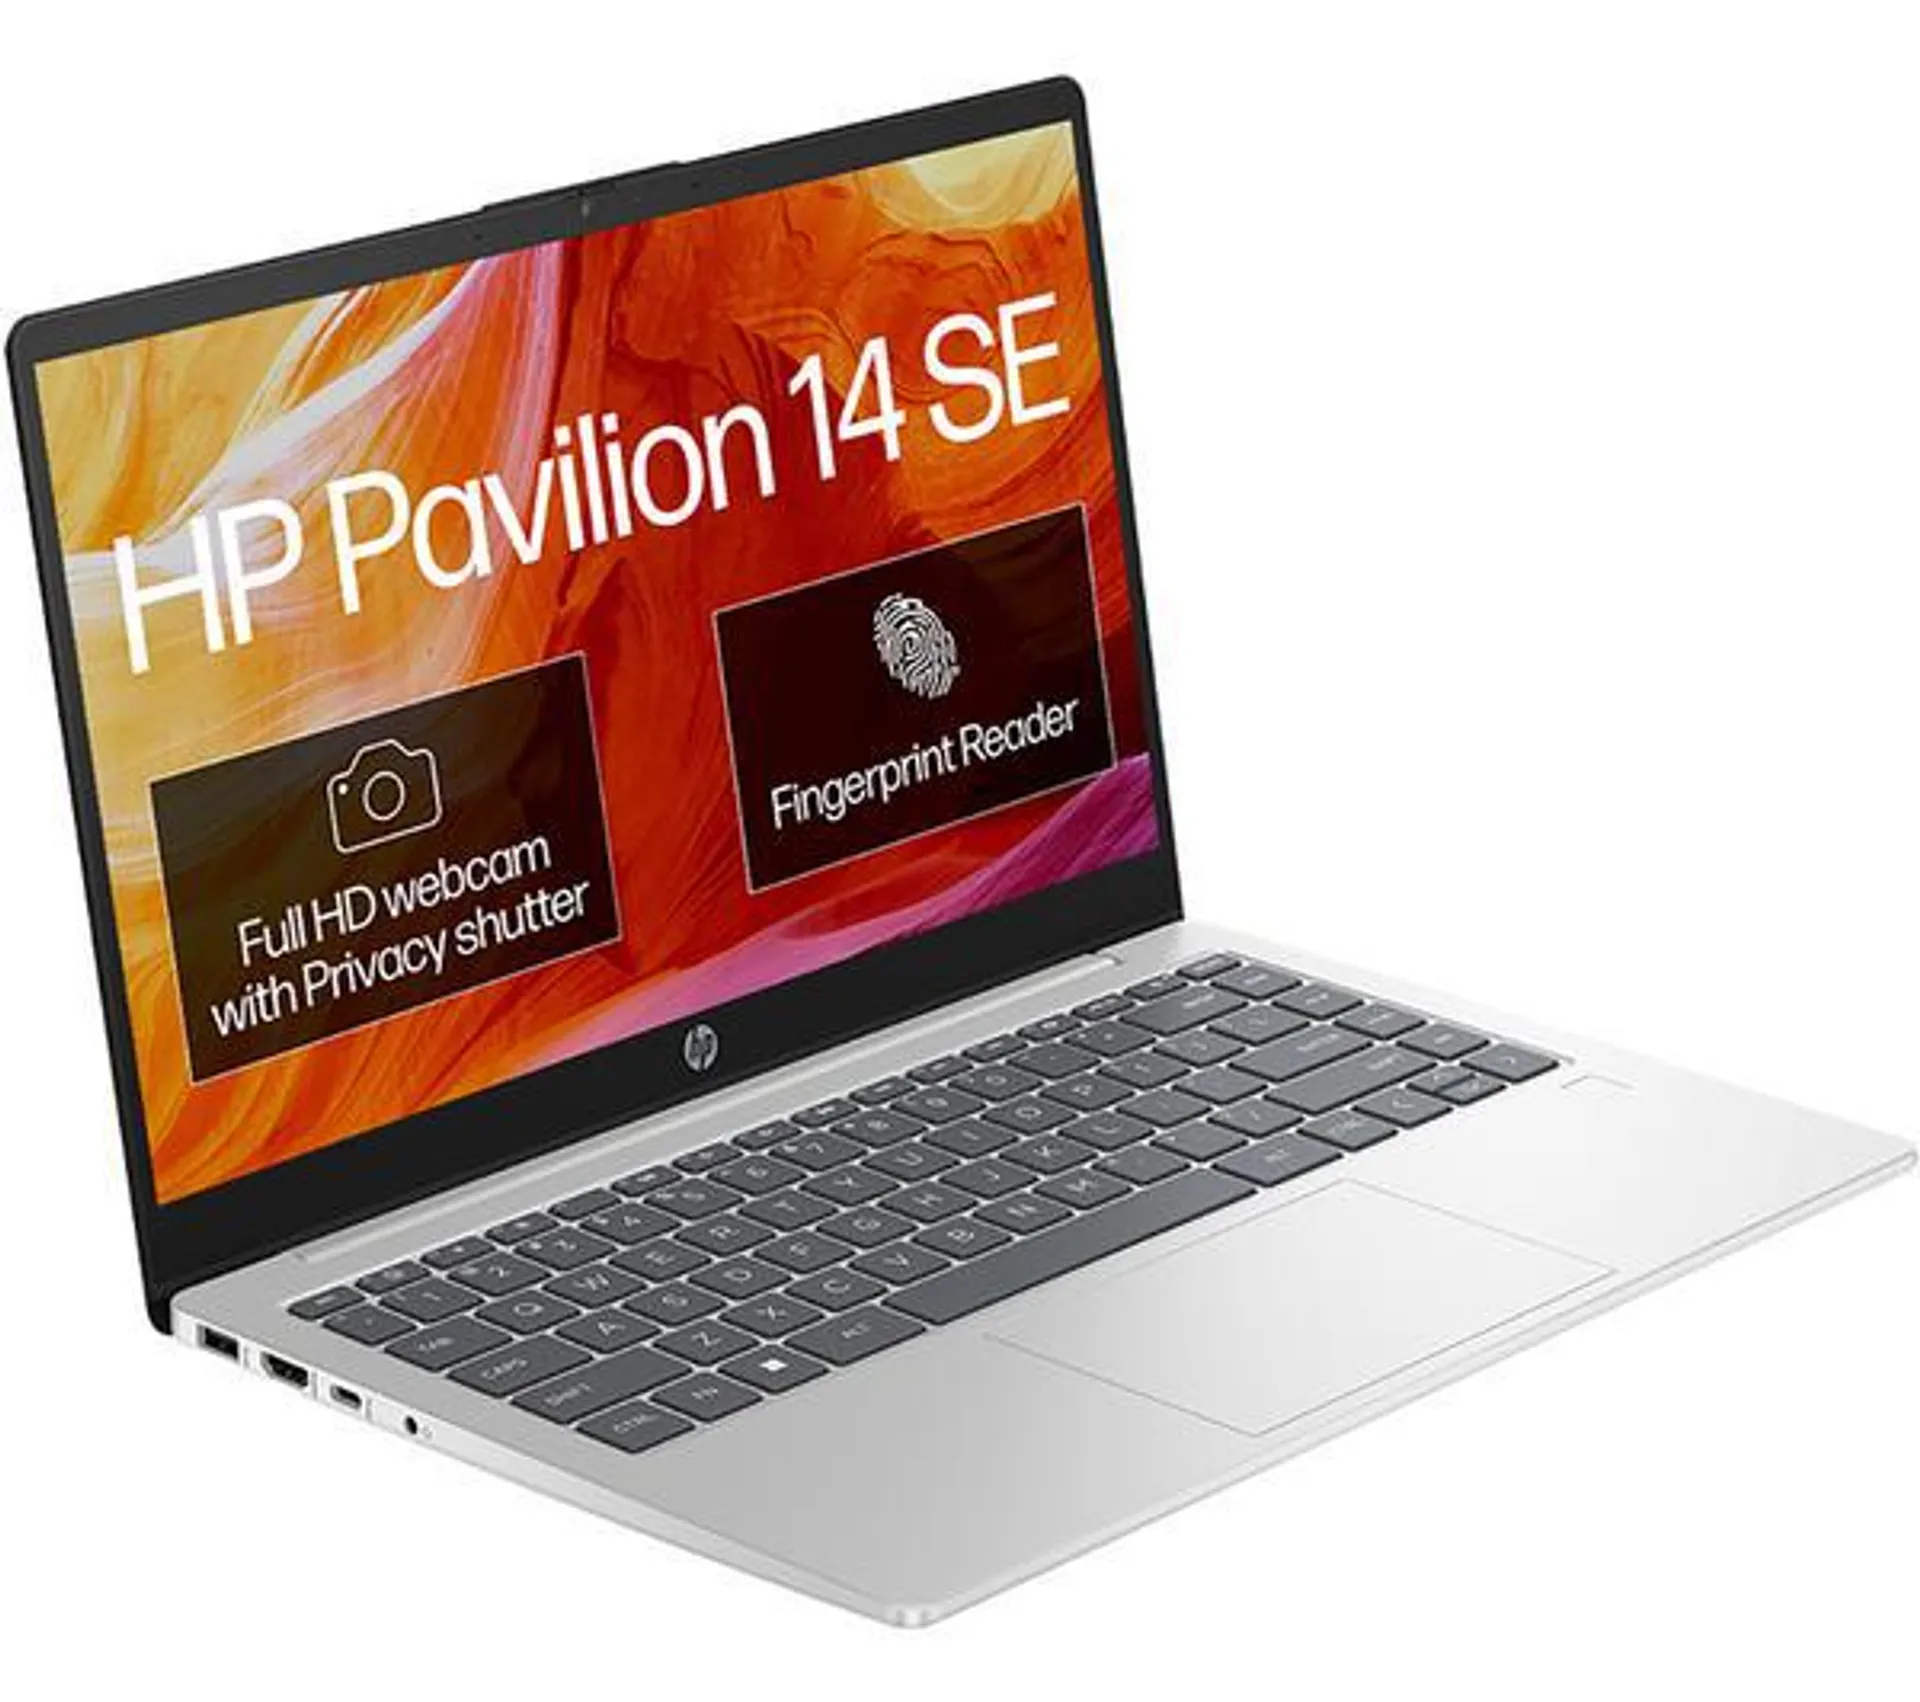 HP Pavilion SE 14" Laptop - Intel® N200, 128 GB SSD, Silver